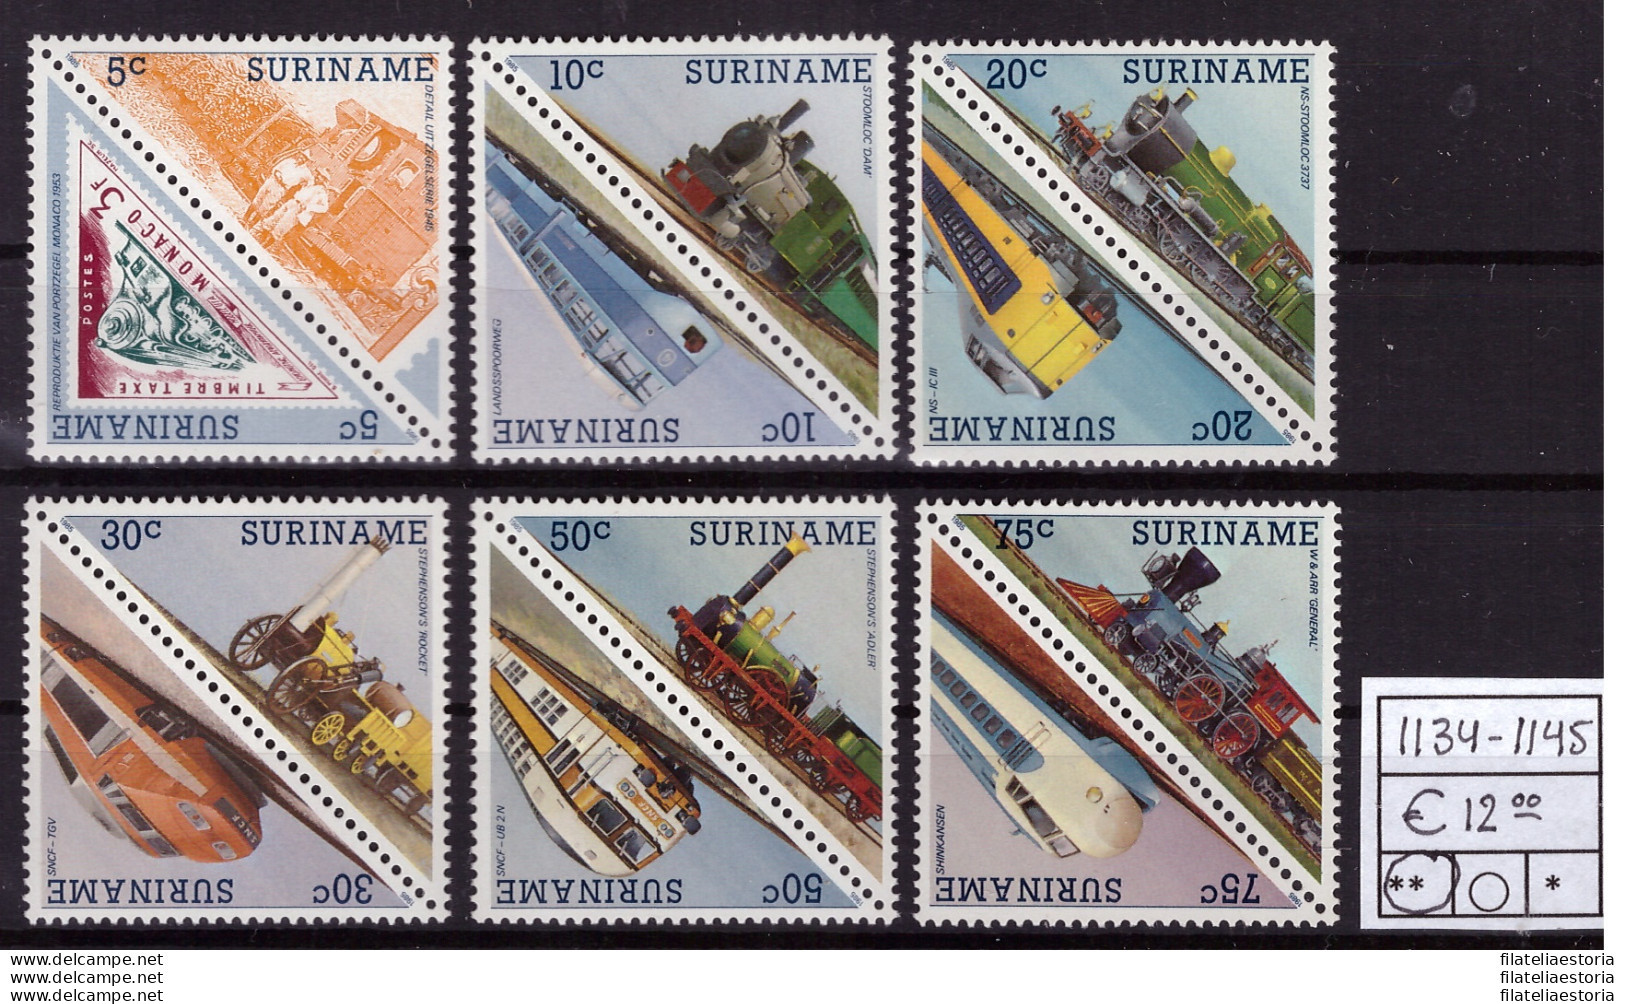 Suriname 1985 - MNH ** - Trains - Michel Nr. 1134-1145 Série Complète (08-098) - Suriname